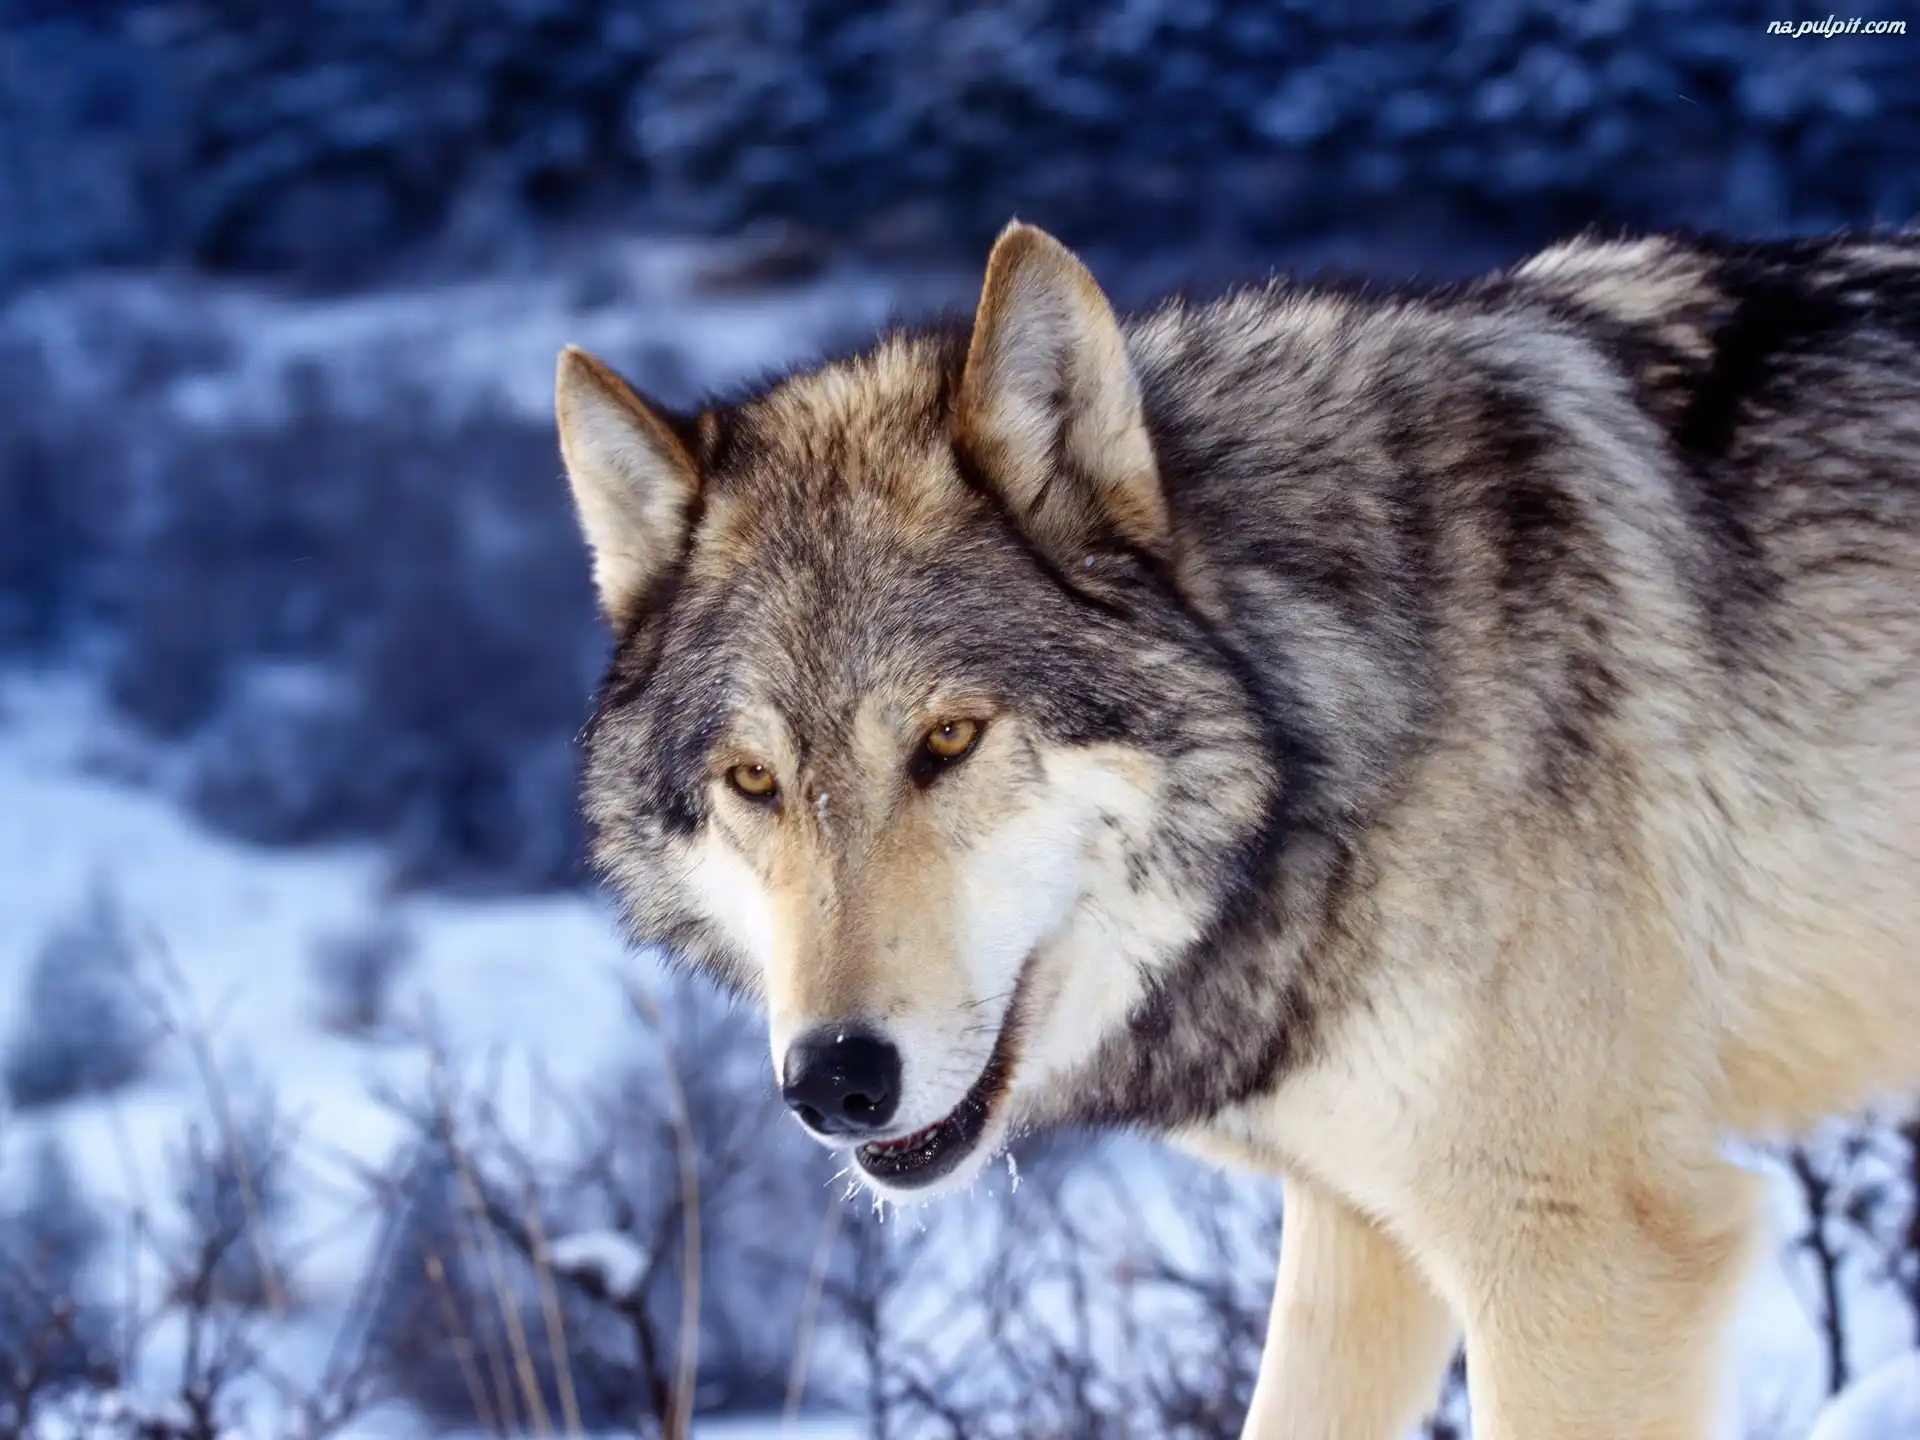 Znalezione obrazy dla zapytania wilk szary